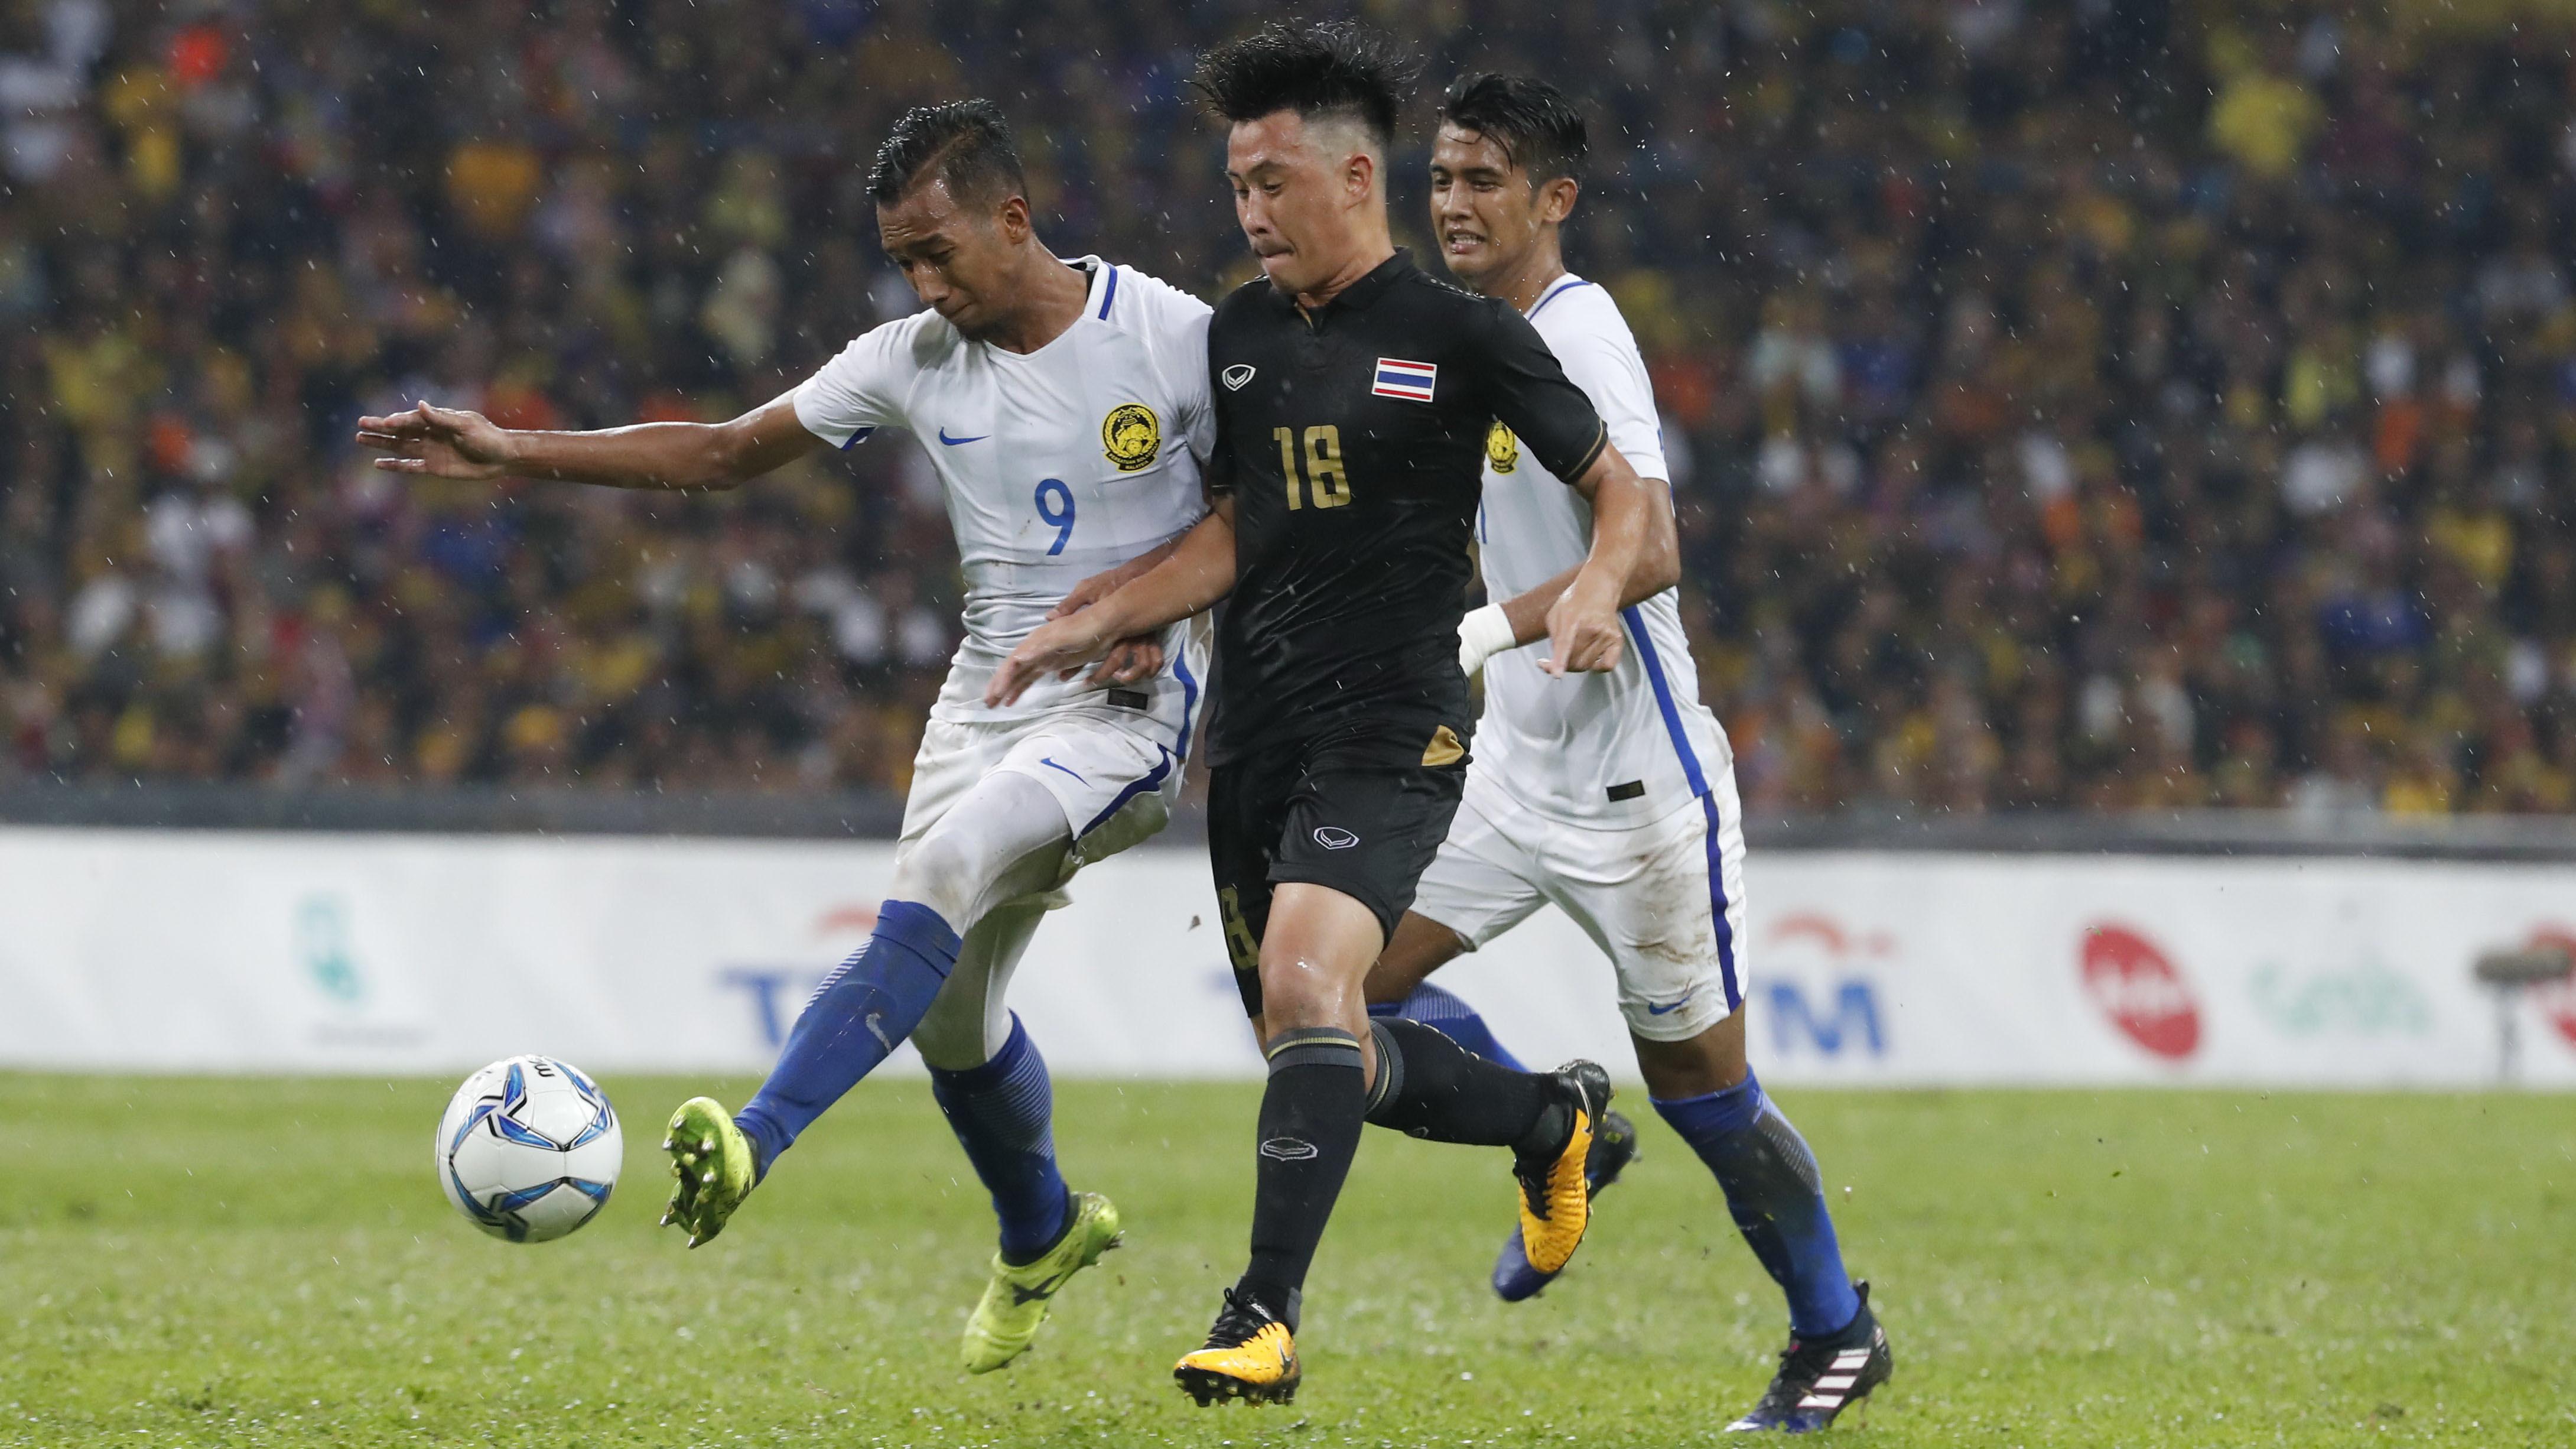  Laga final sepak bola SEA Games antara Malaysia vs Thailand mengalami perubahan venue, dari Stadion Bukit Jalil ke Stadion Shah Alam. (AP/Vincent Thian)